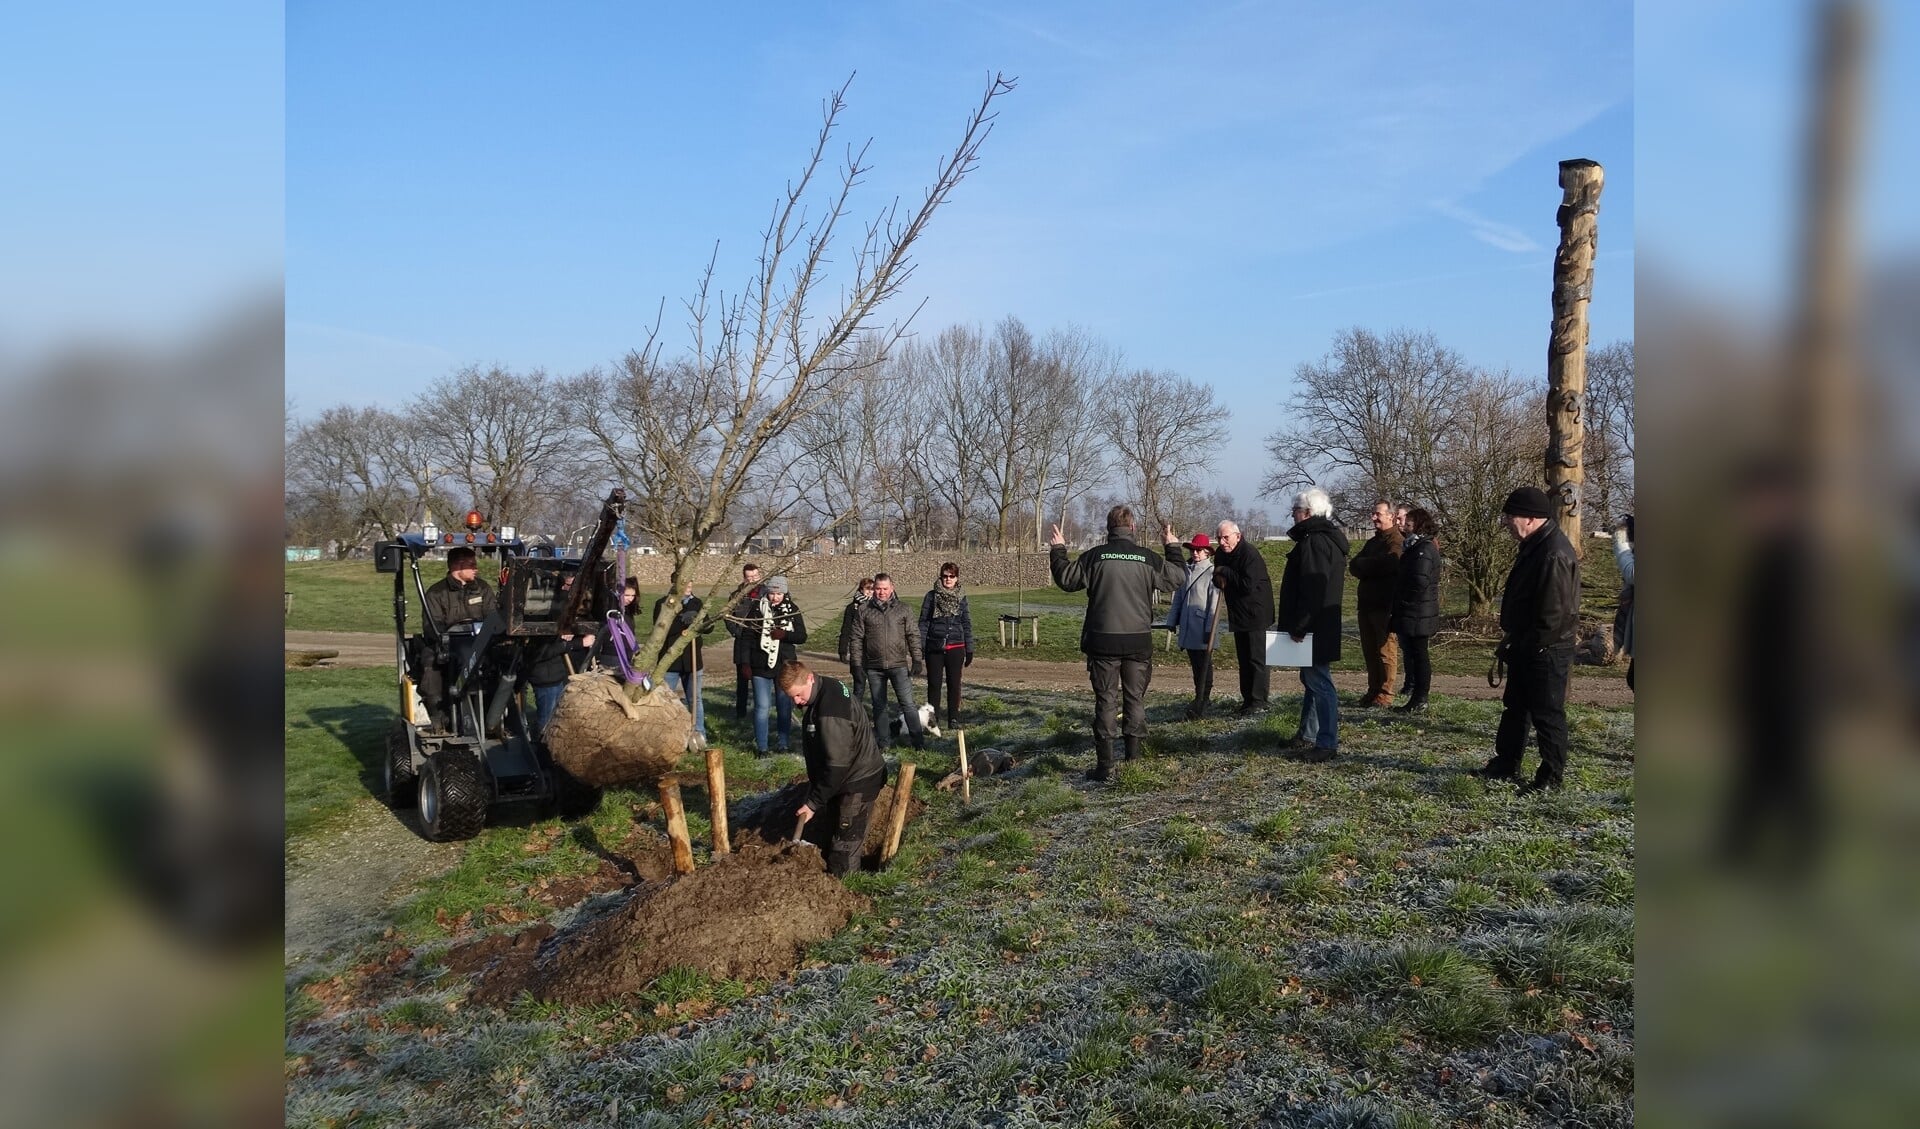 Herinneringsbomen de grond in op Arboretum in Geffen. (Foto's: Ineke Voskamp